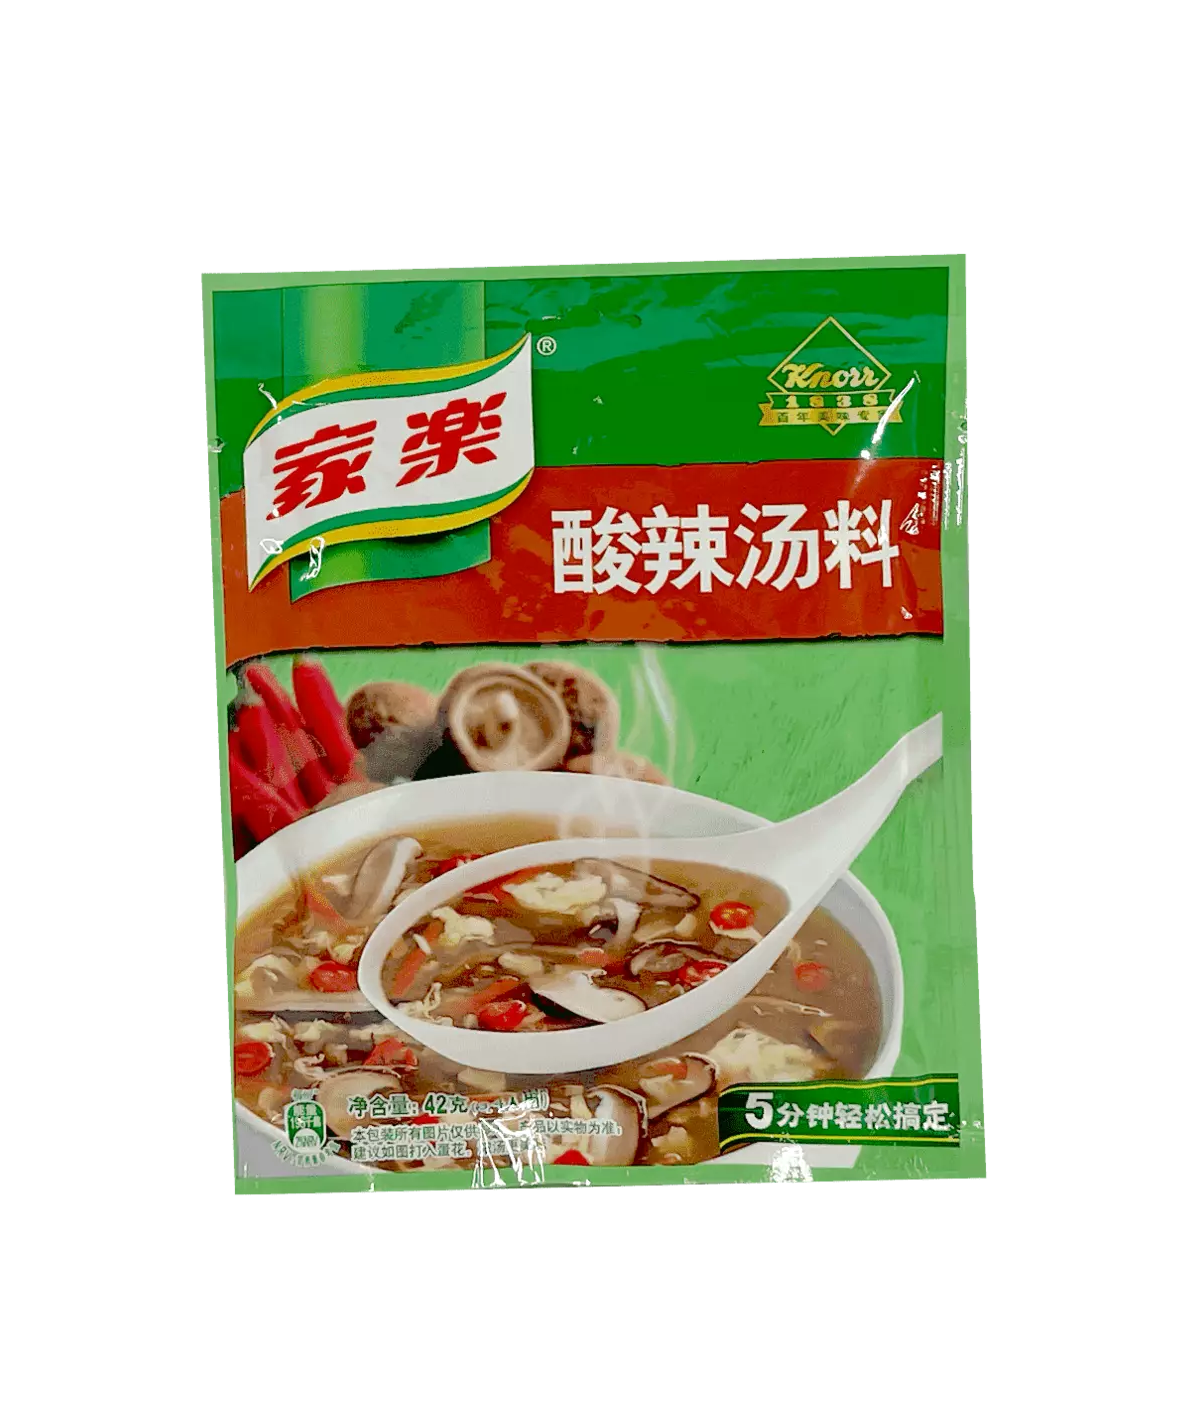 Snabbsoppa- Spicy/Sur Smak 42g Jia Le Kina